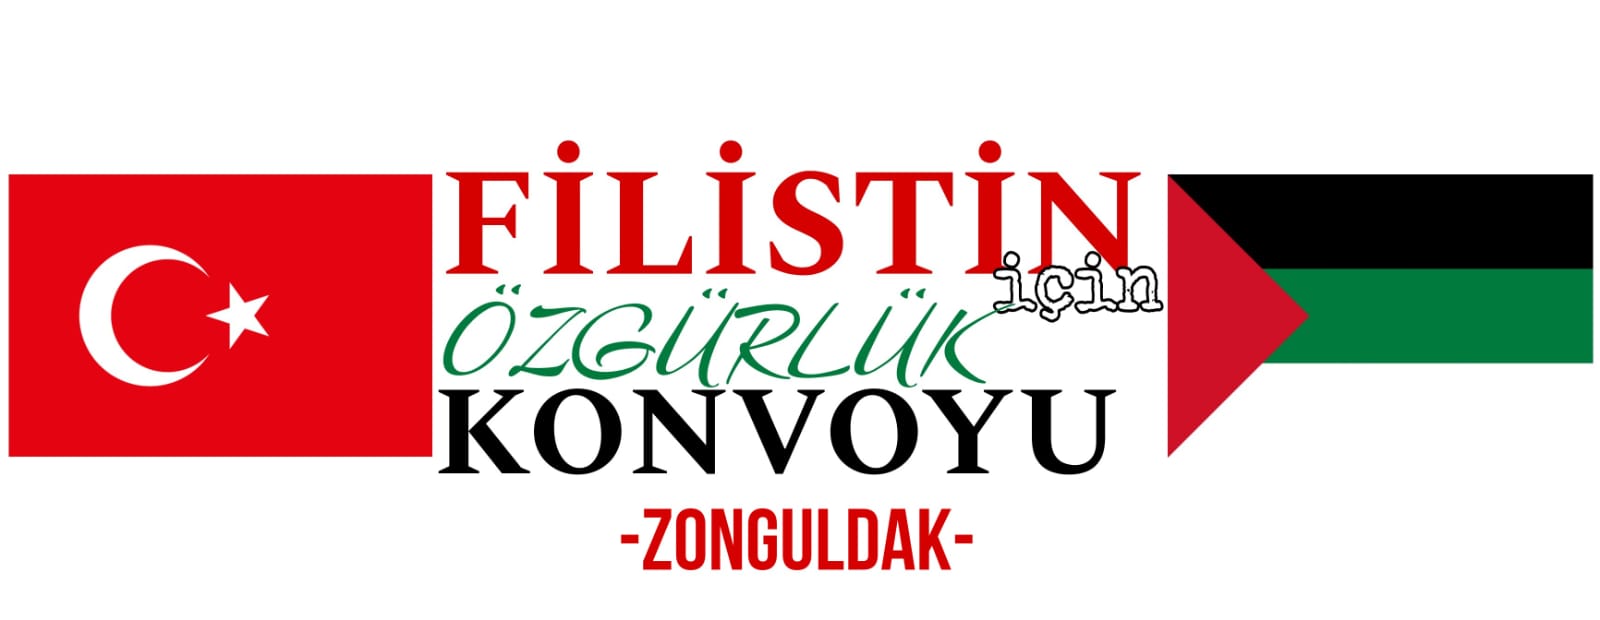 Zonguldak Filistin'e destek için ayağa kalkıyor!